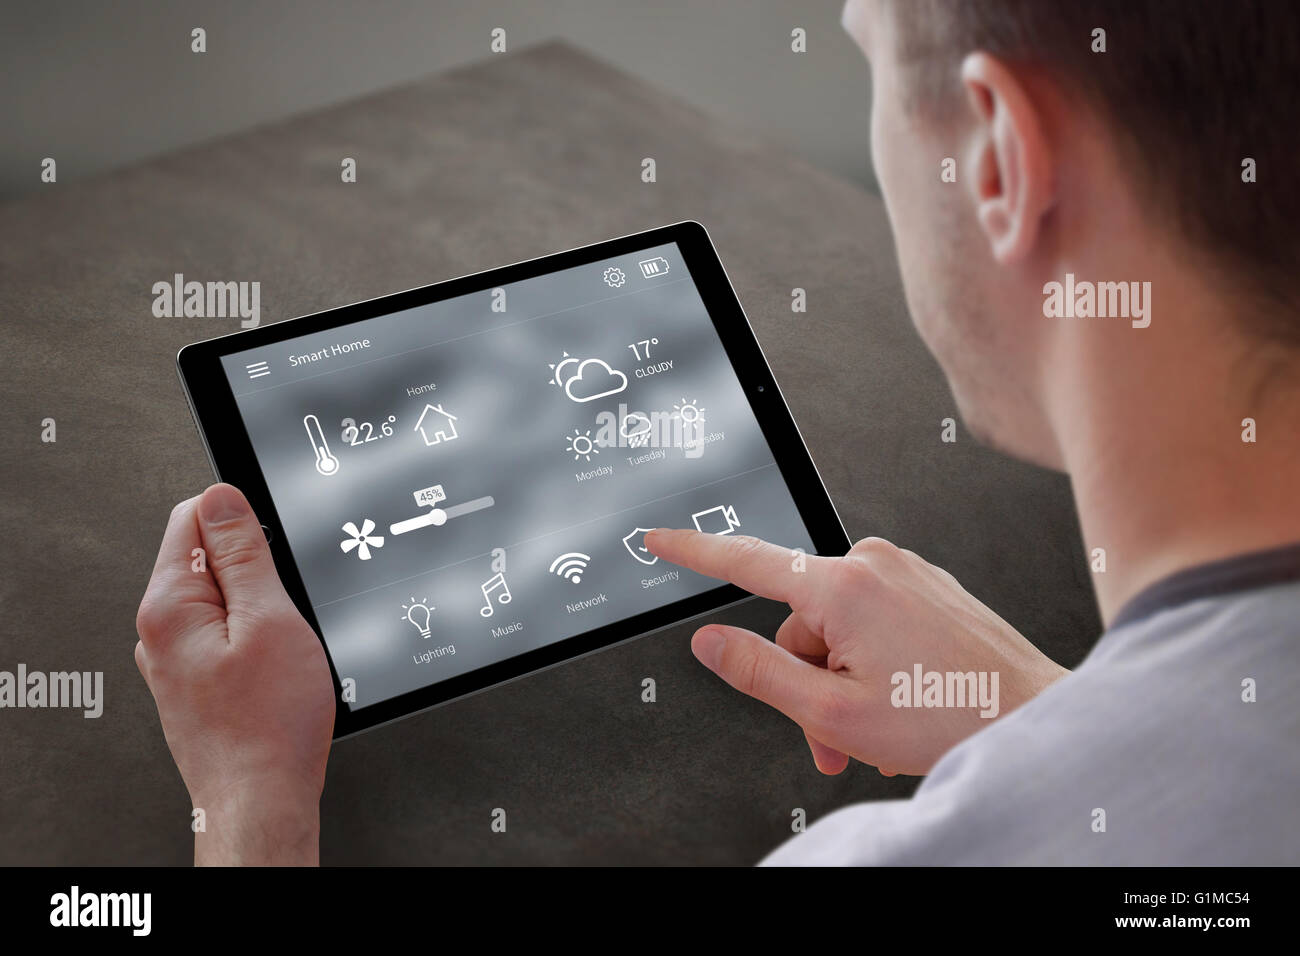 Utiliser l'homme pour l'application smart home control sur tablette. Intérieur de salle de séjour dans l'arrière-plan. Banque D'Images